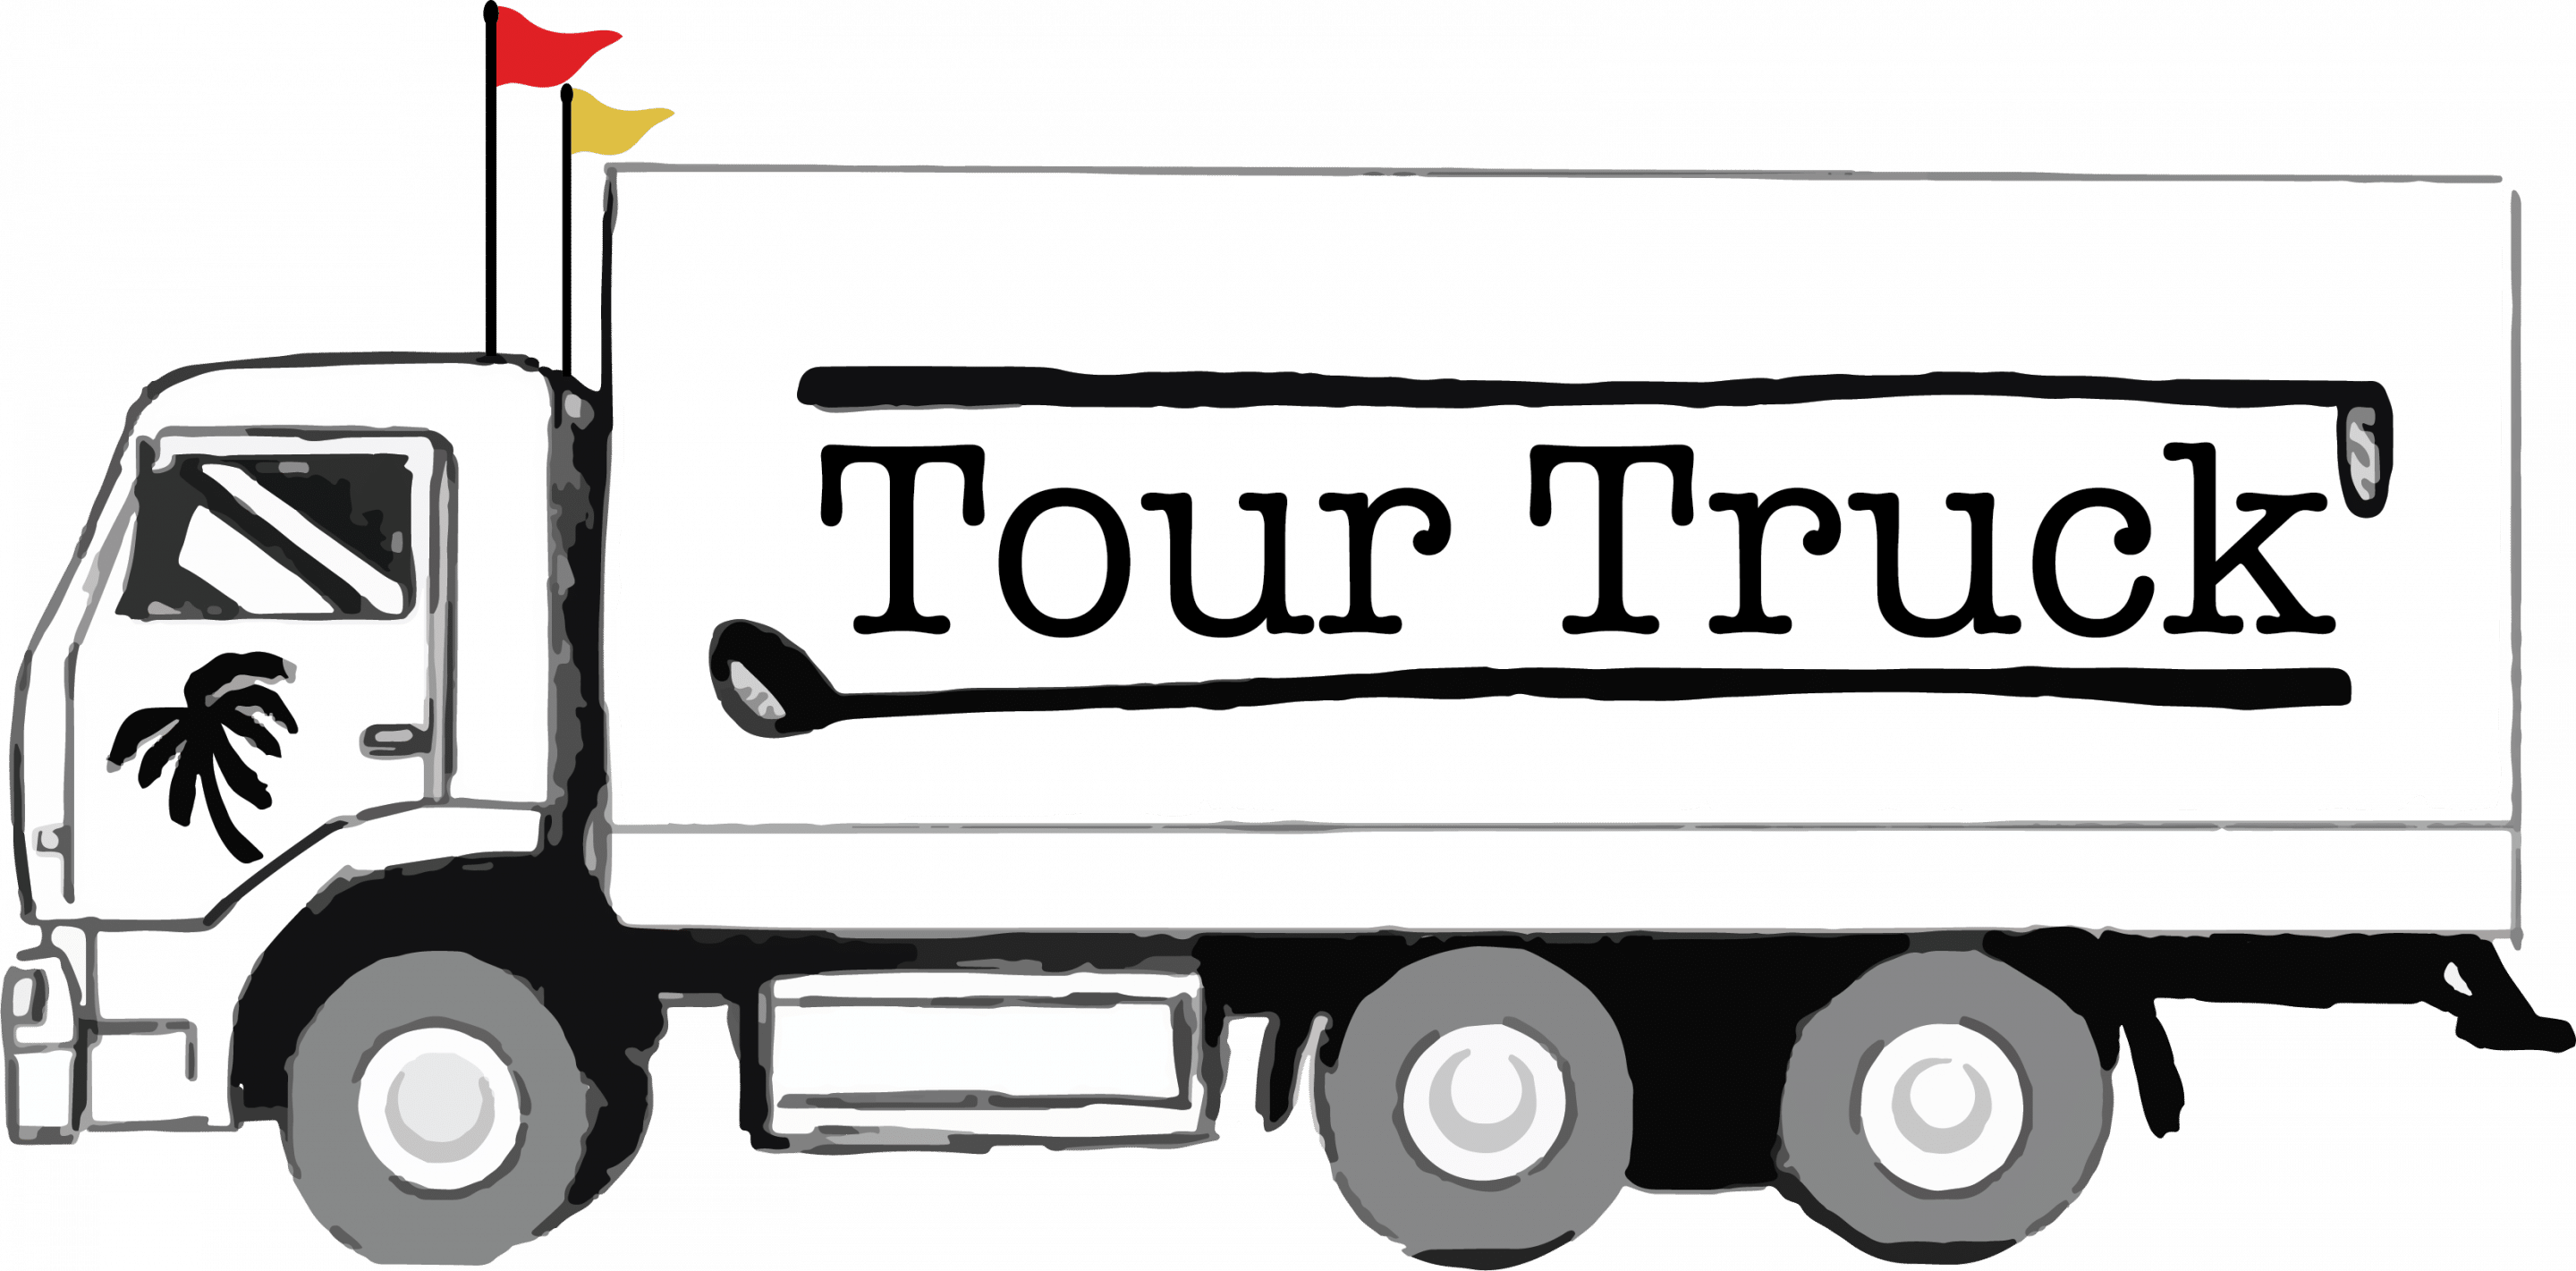 Tour Truck USA